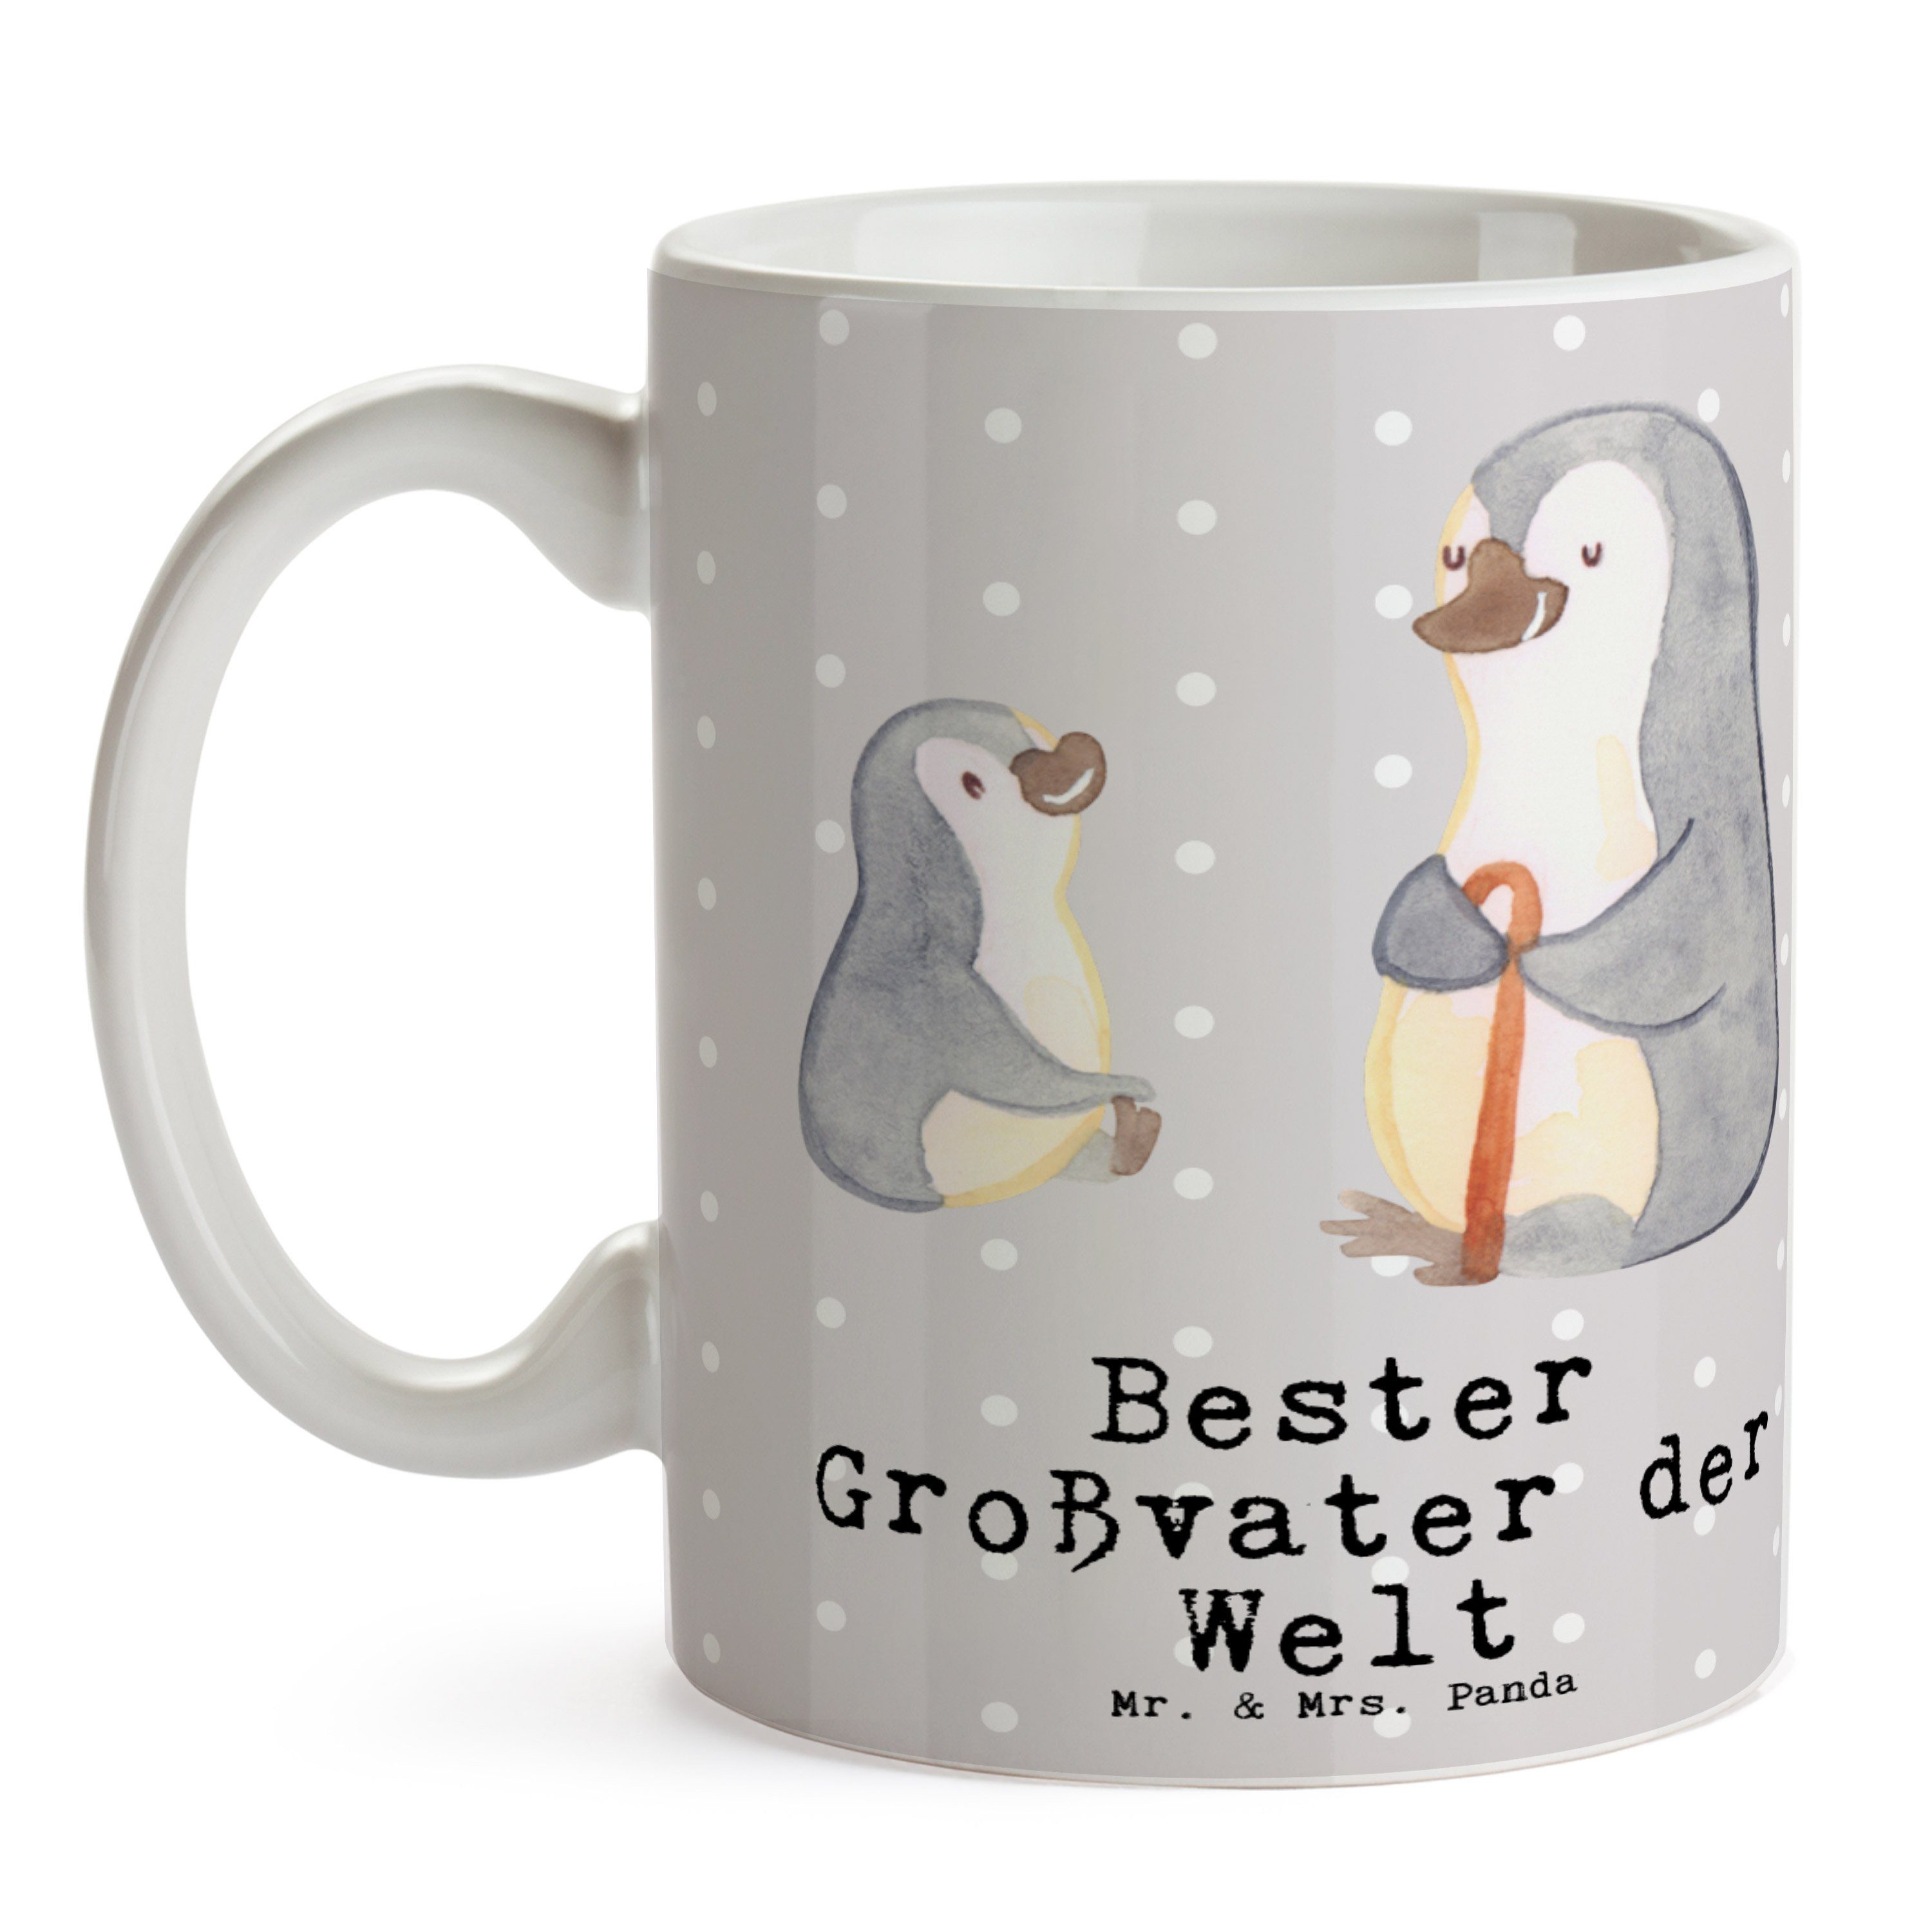 Welt & Mrs. Panda Bester Grau - Keramik - Großvater Tasse Pinguin Mr. Pastell Mitbring, der Geschenk,